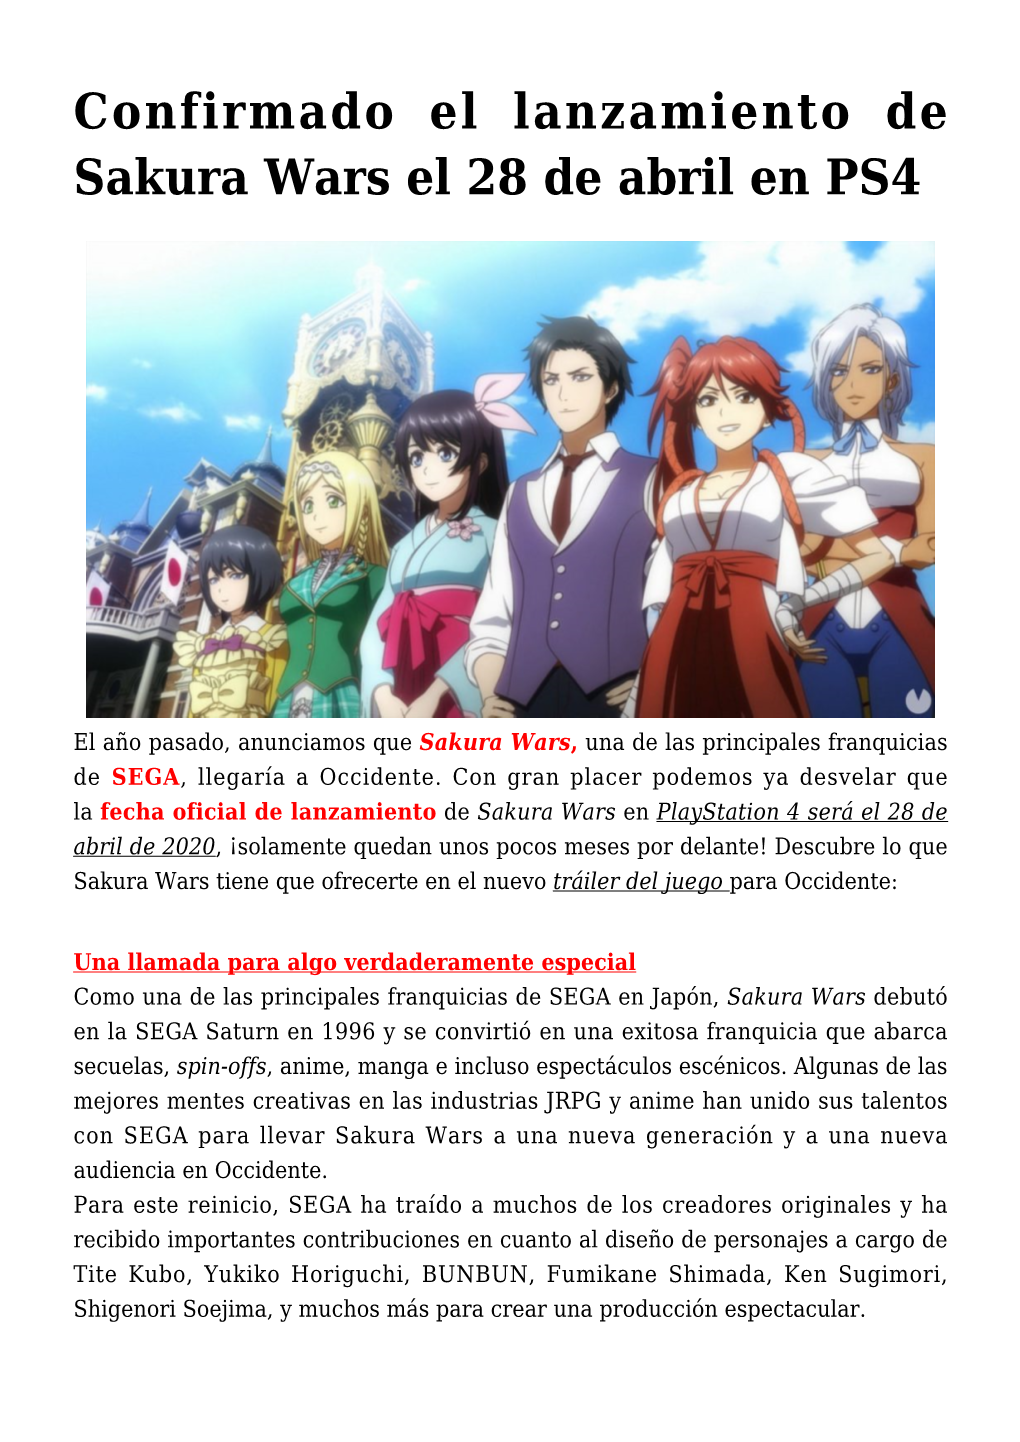 Confirmado El Lanzamiento De Sakura Wars El 28 De Abril En PS4